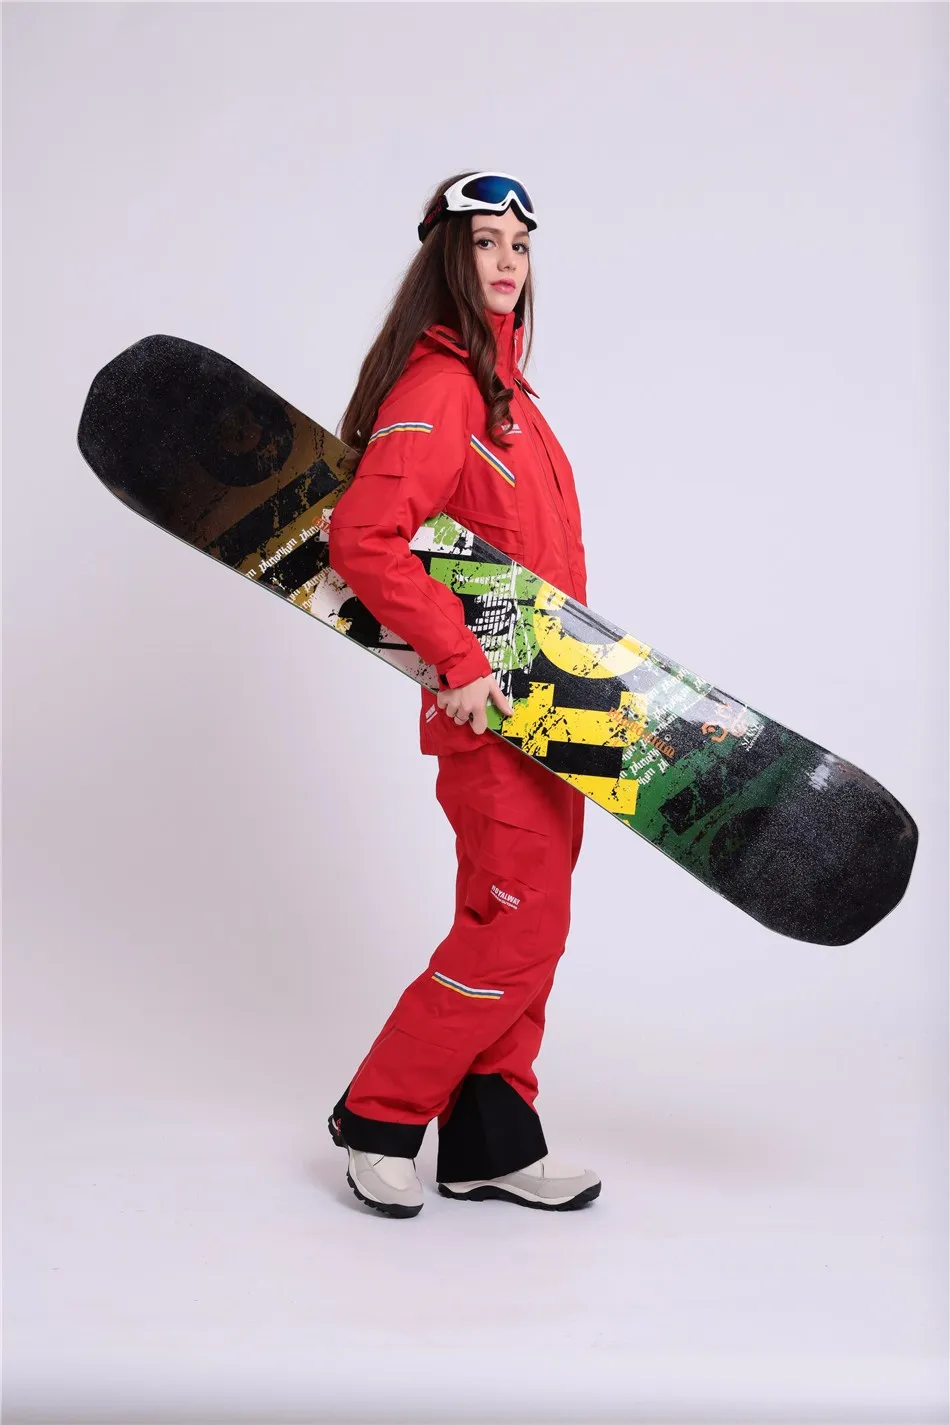 Royalway Для женщин Лыжный Спорт Лыжный Куртки ветрозащитный Водонепроницаемый куртка регулируемый съемный дышащий Качество recco gpsjacket# RFSL4504G